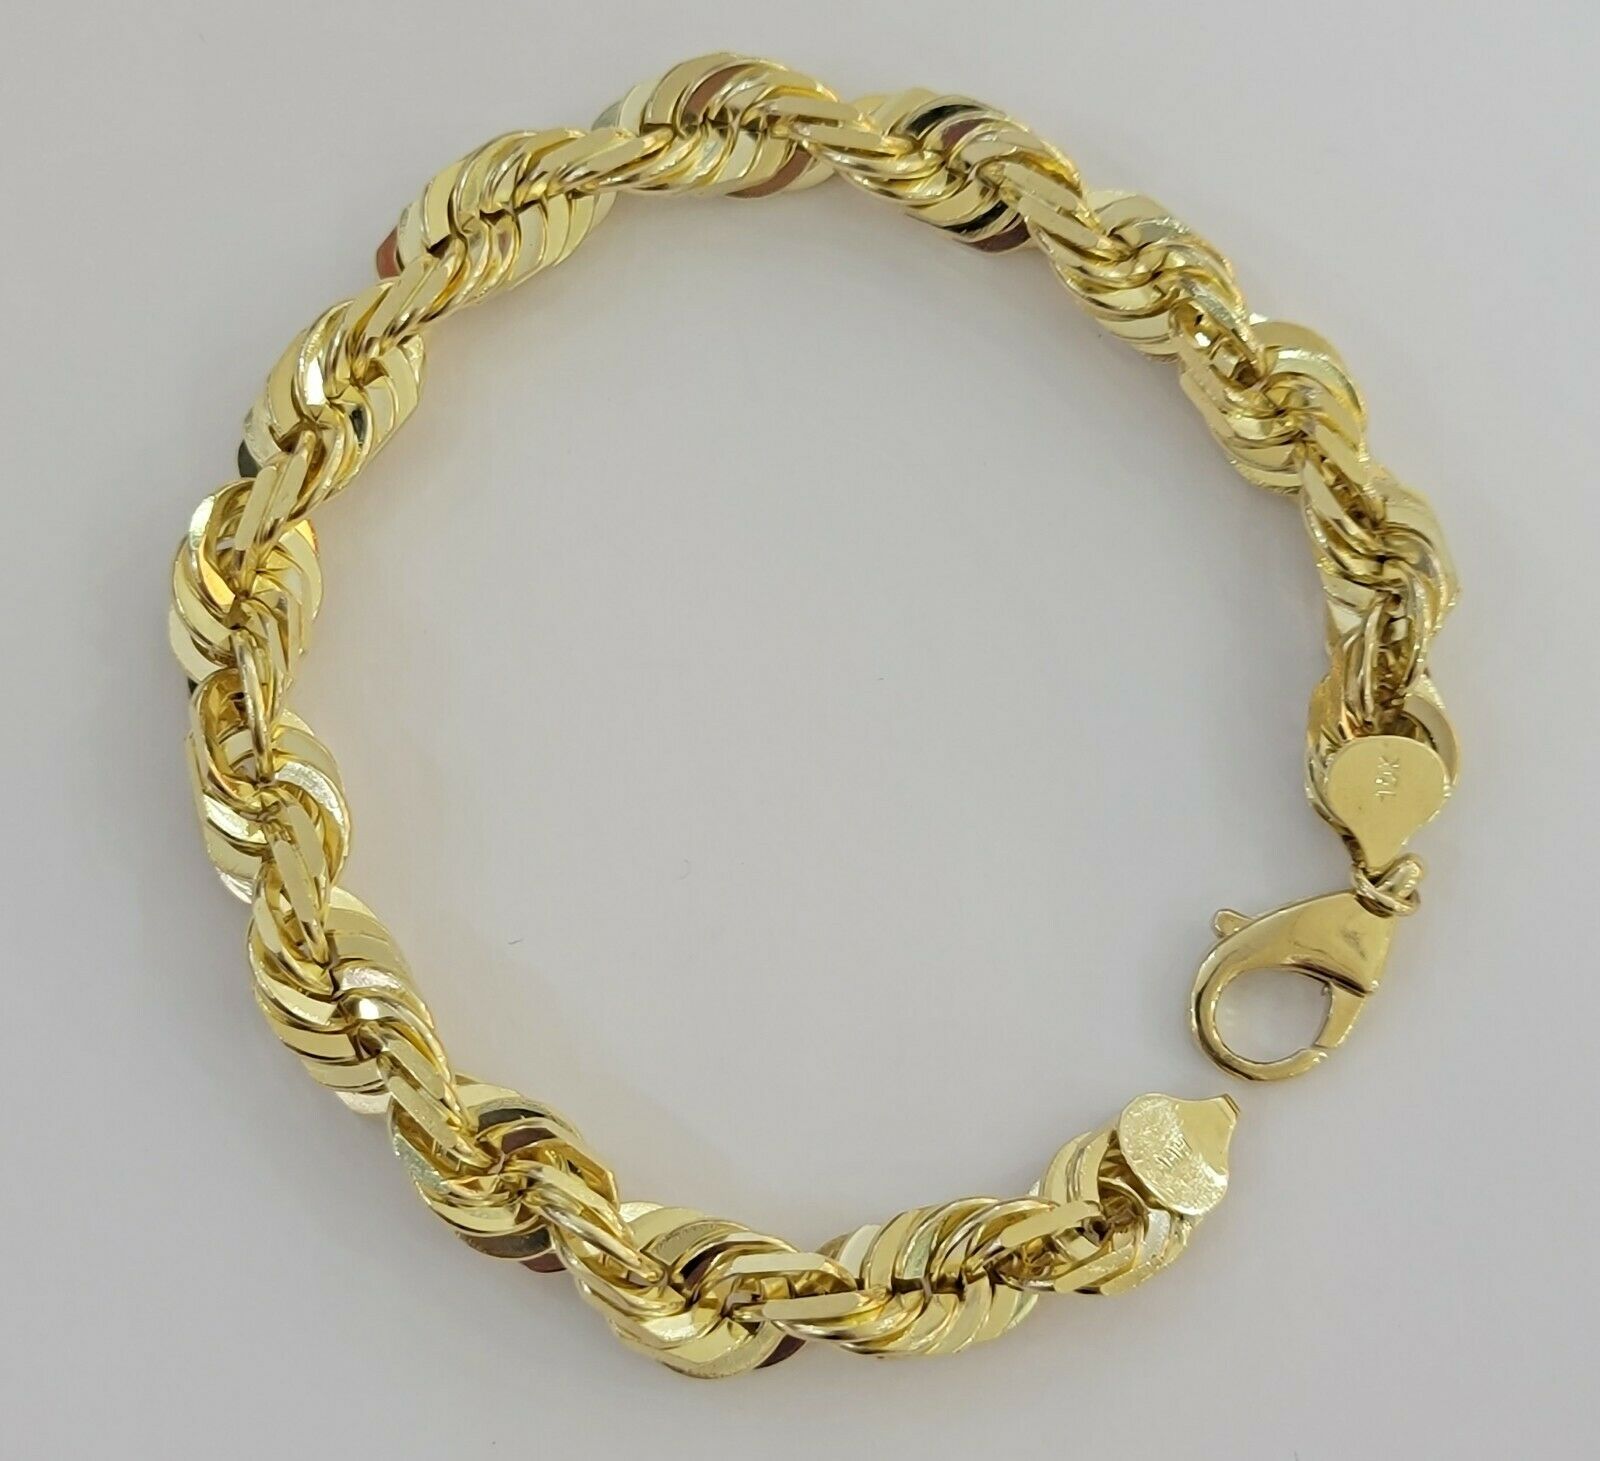 Everlasting Gold Men's 10k Gold Curb Chain Bracelet